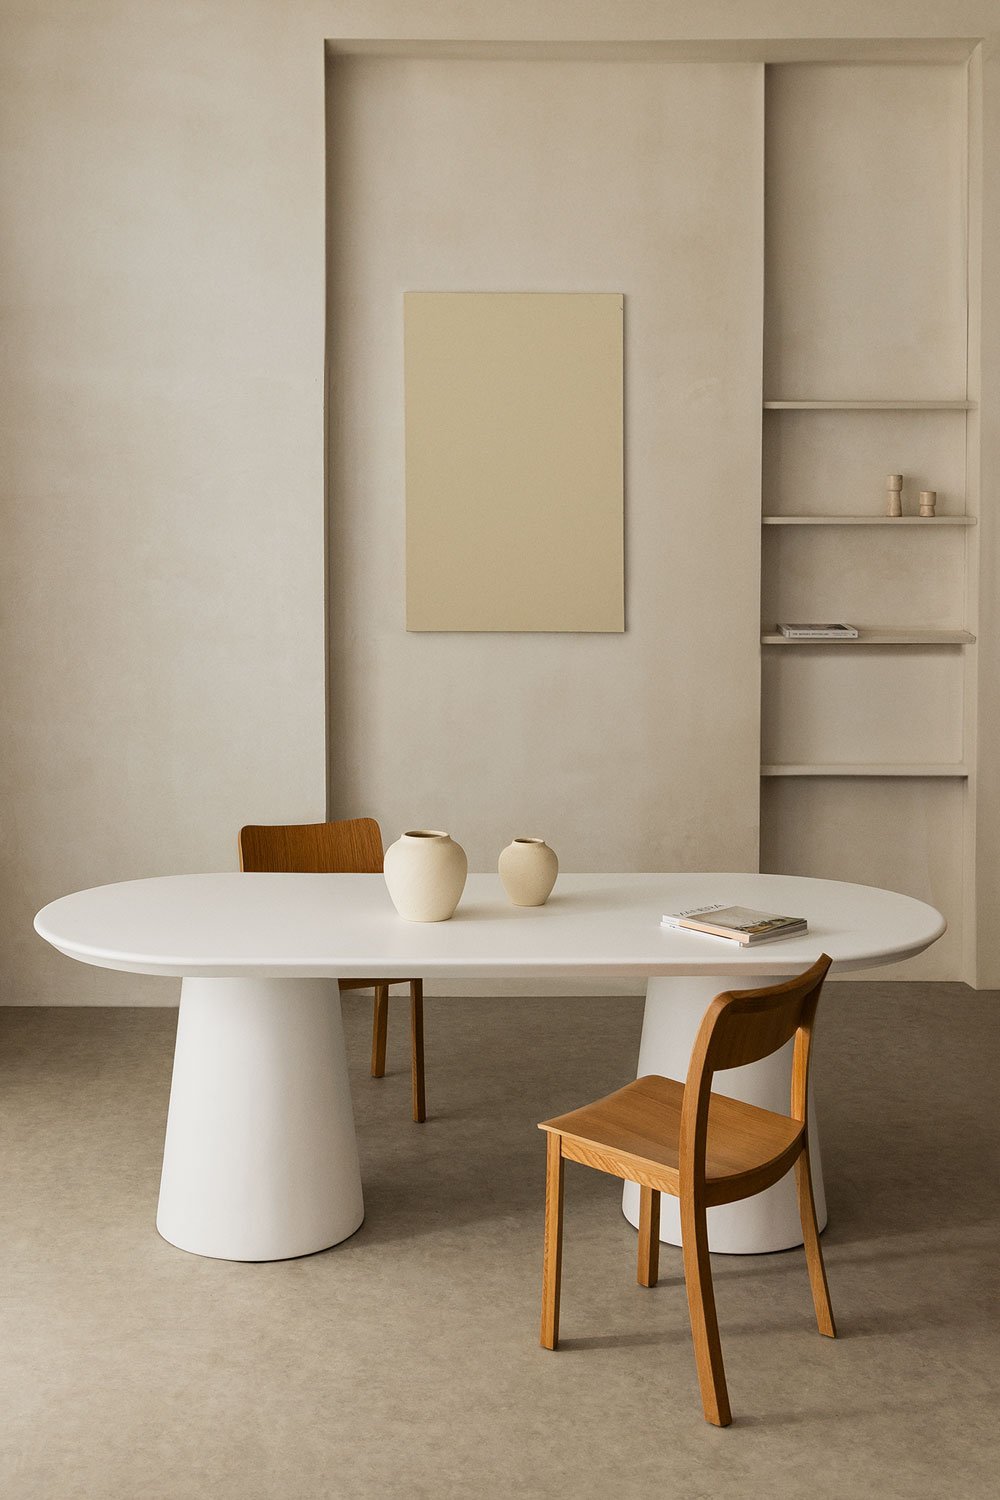  Ovale eettafel in cement (220x95 cm) Noemi, galerij beeld 1